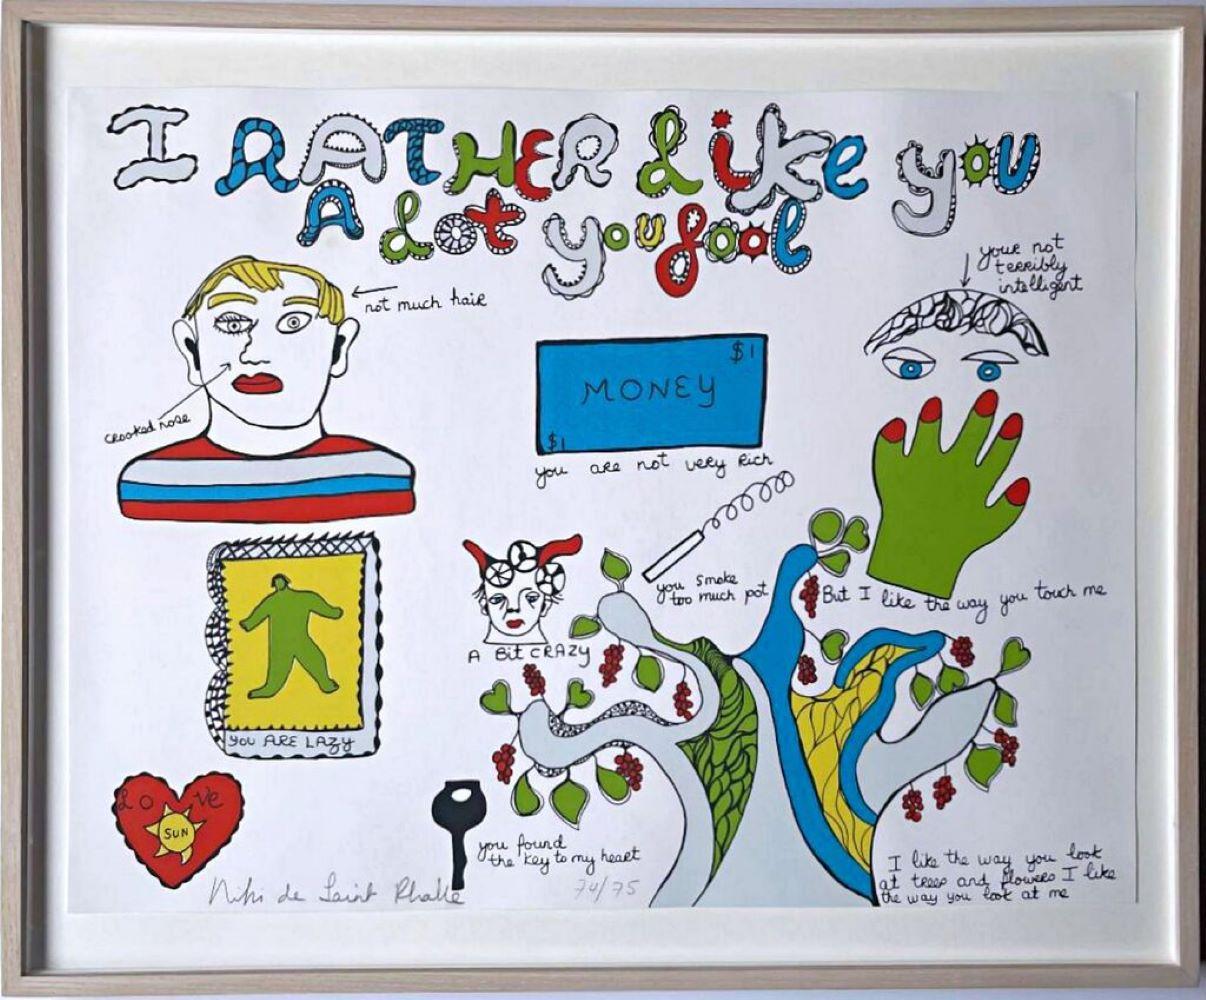 Where is Niki de Saint Phalle’s art?